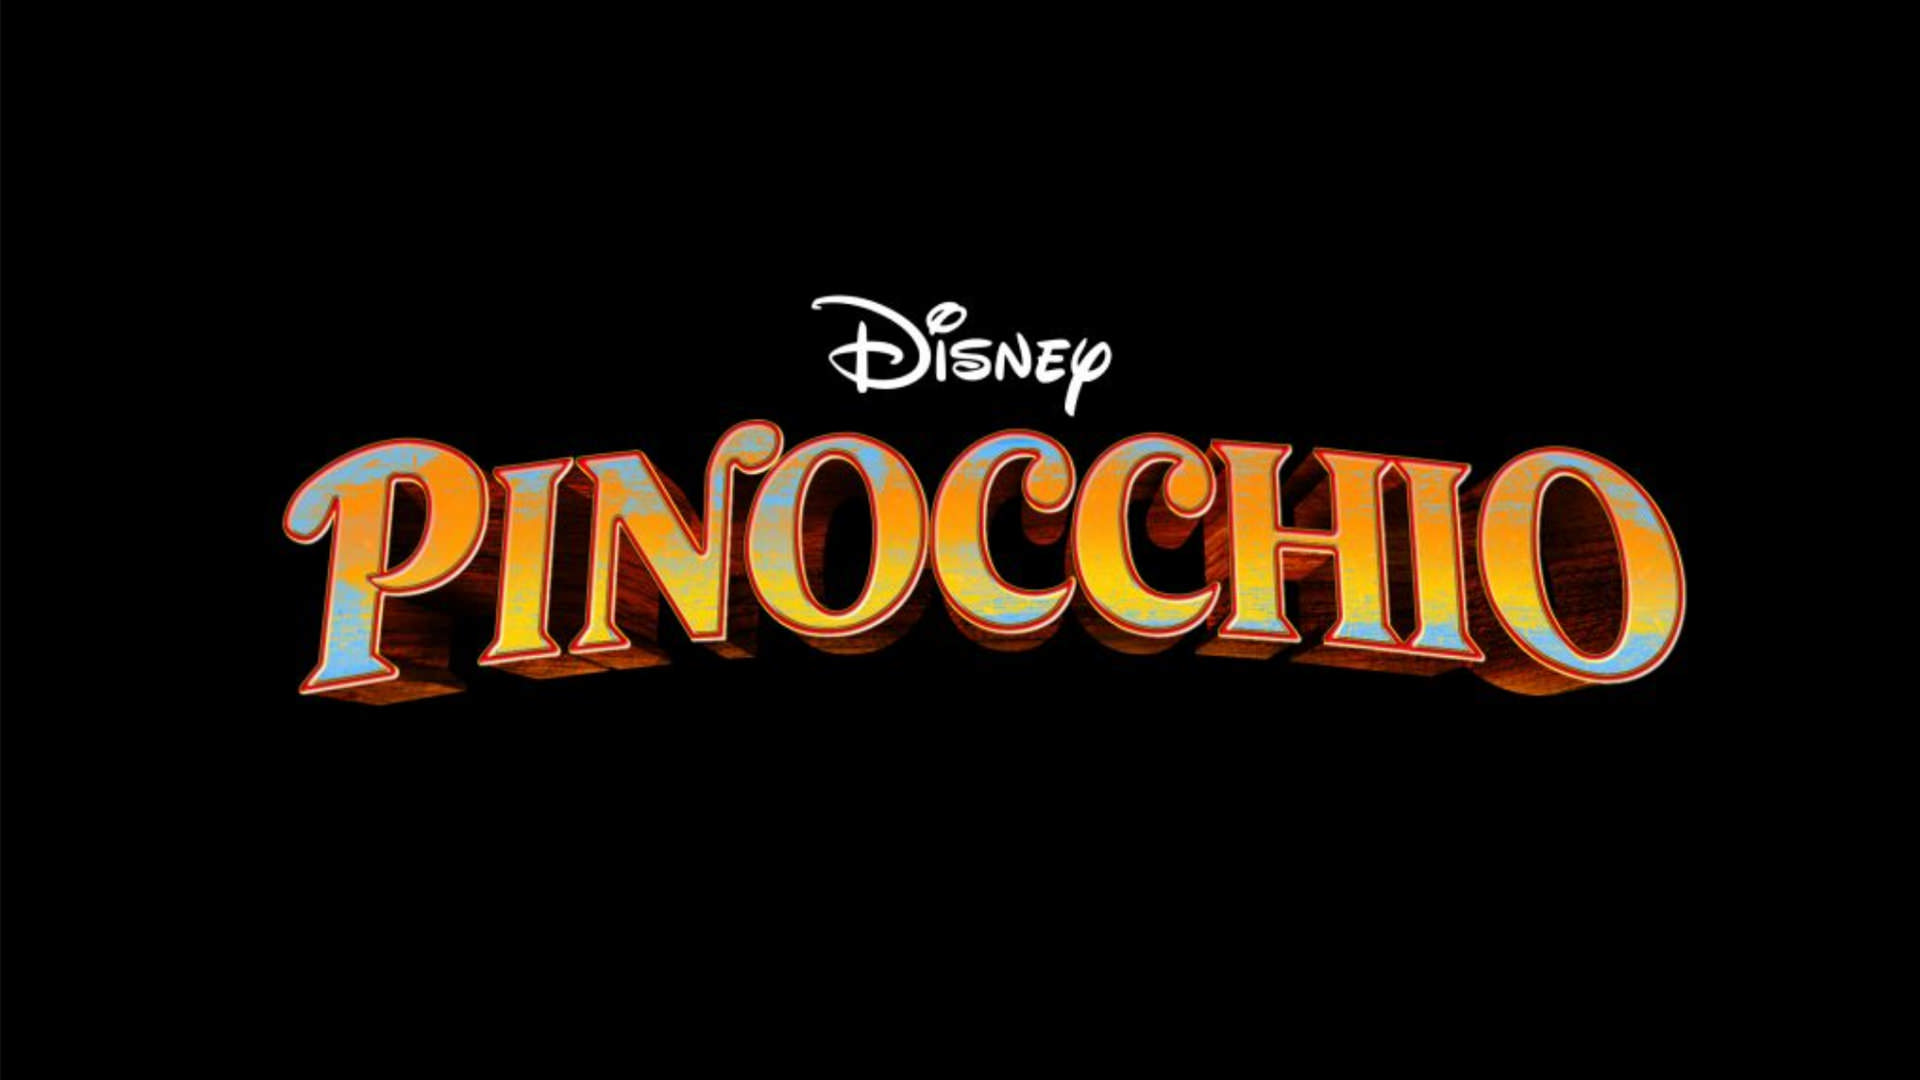 مشخص شدن صداپیشه پینوکیو در فیلم Pinocchio؛ پیوستن بازیگران بیشتر به لایو اکشن جدید دیزنی